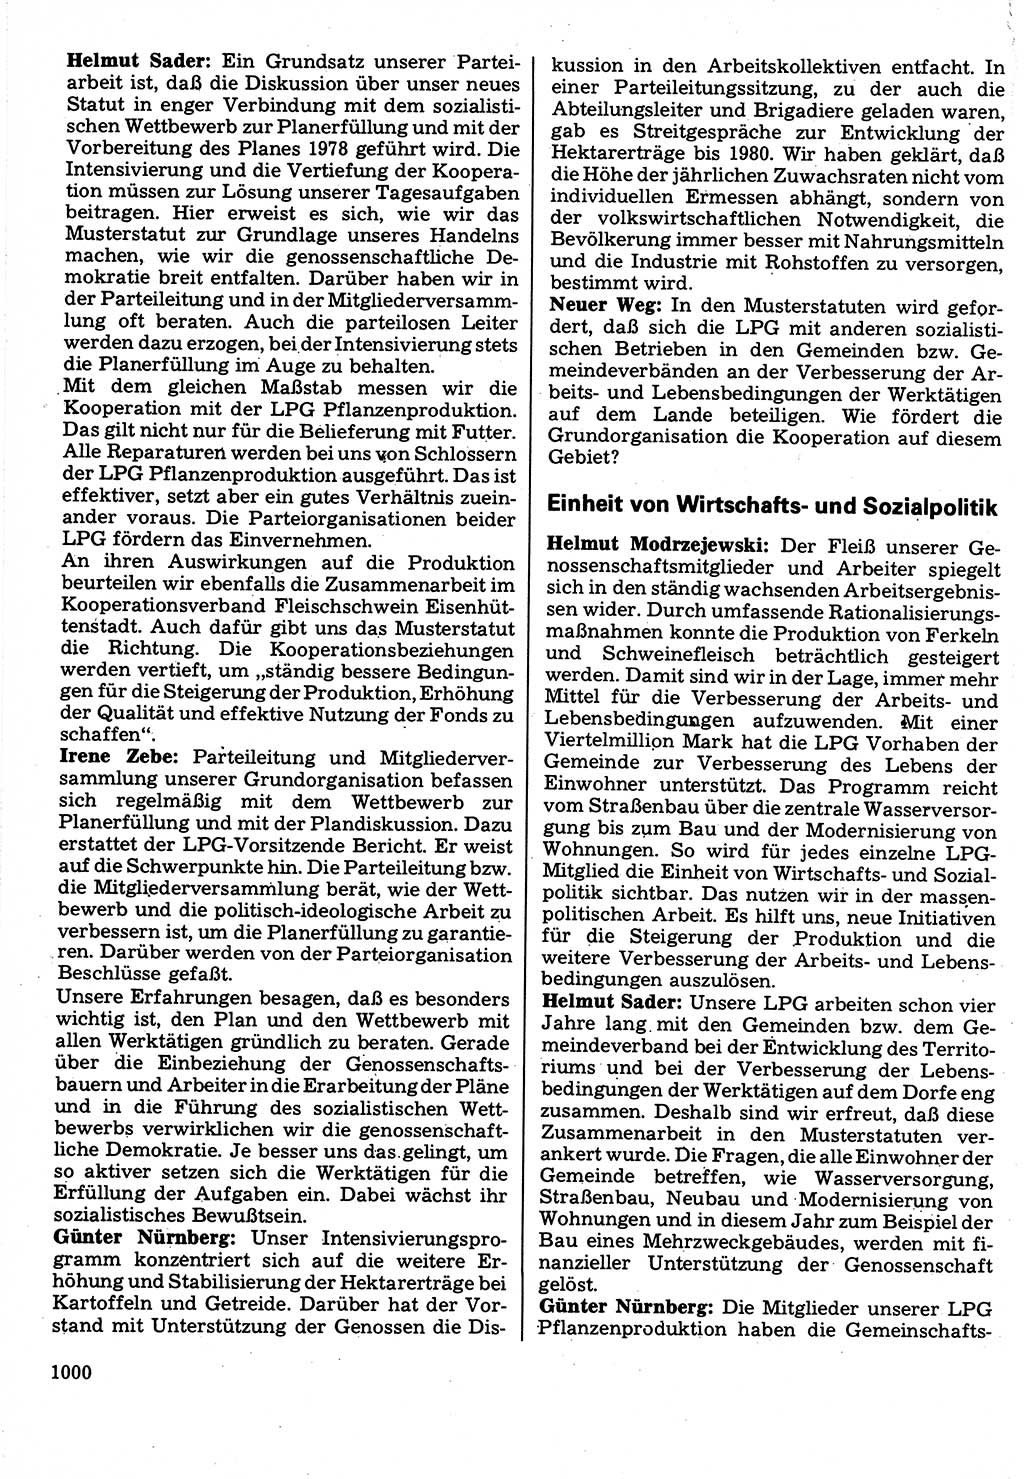 Neuer Weg (NW), Organ des Zentralkomitees (ZK) der SED (Sozialistische Einheitspartei Deutschlands) für Fragen des Parteilebens, 32. Jahrgang [Deutsche Demokratische Republik (DDR)] 1977, Seite 1000 (NW ZK SED DDR 1977, S. 1000)